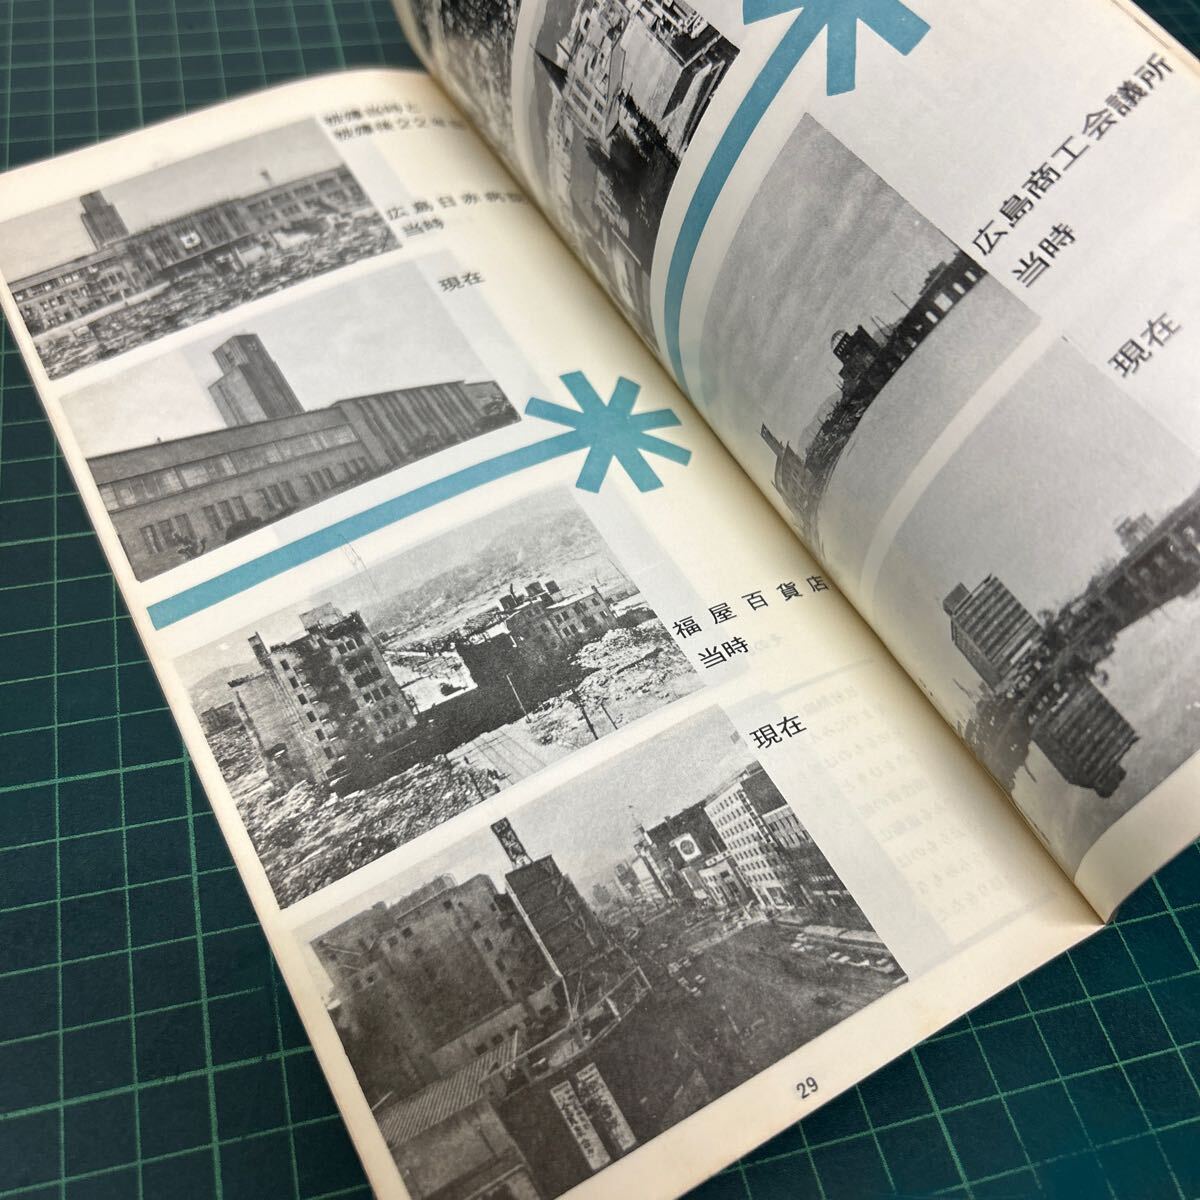 ひろしま その訴え 原爆資料保存会 昭和43年 初版 近代プロモーション 広島 パンフレット 写真資料_画像6